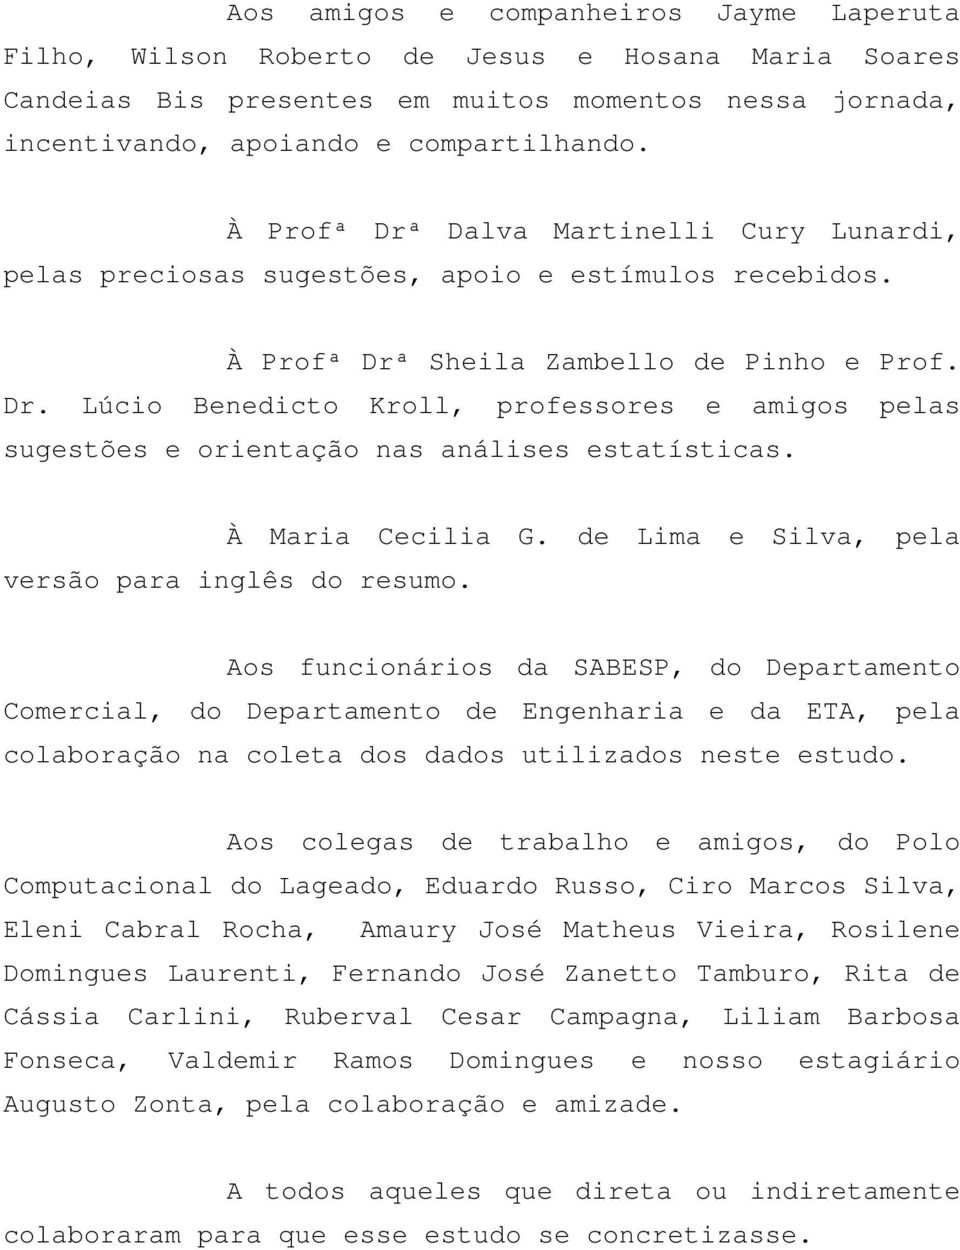 À Maria Cecilia G. de Lima e Silva, pela versão para inglês do resumo.